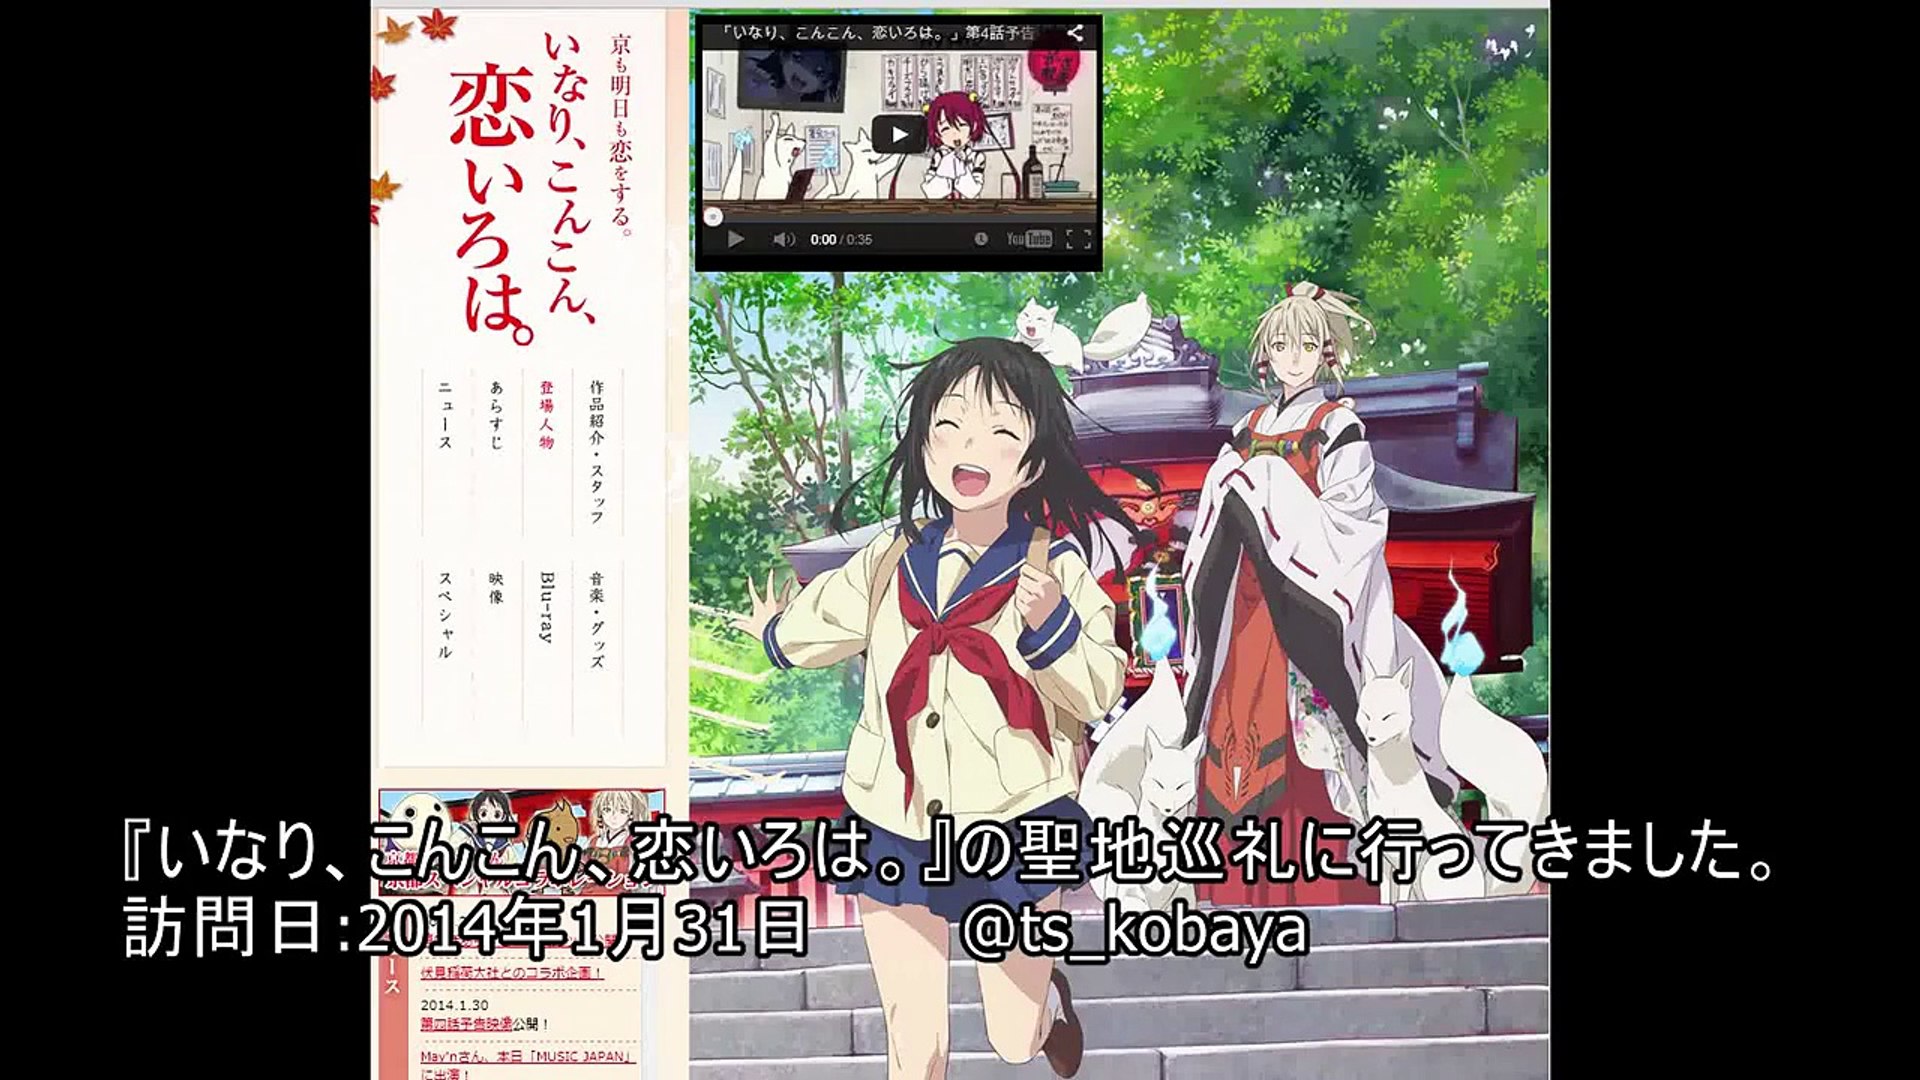 聖地巡礼 いなり こんこん 恋いろは の舞台 京都伏見を訪れてみた Fushimi Inari Taisha Kyoto Video Dailymotion